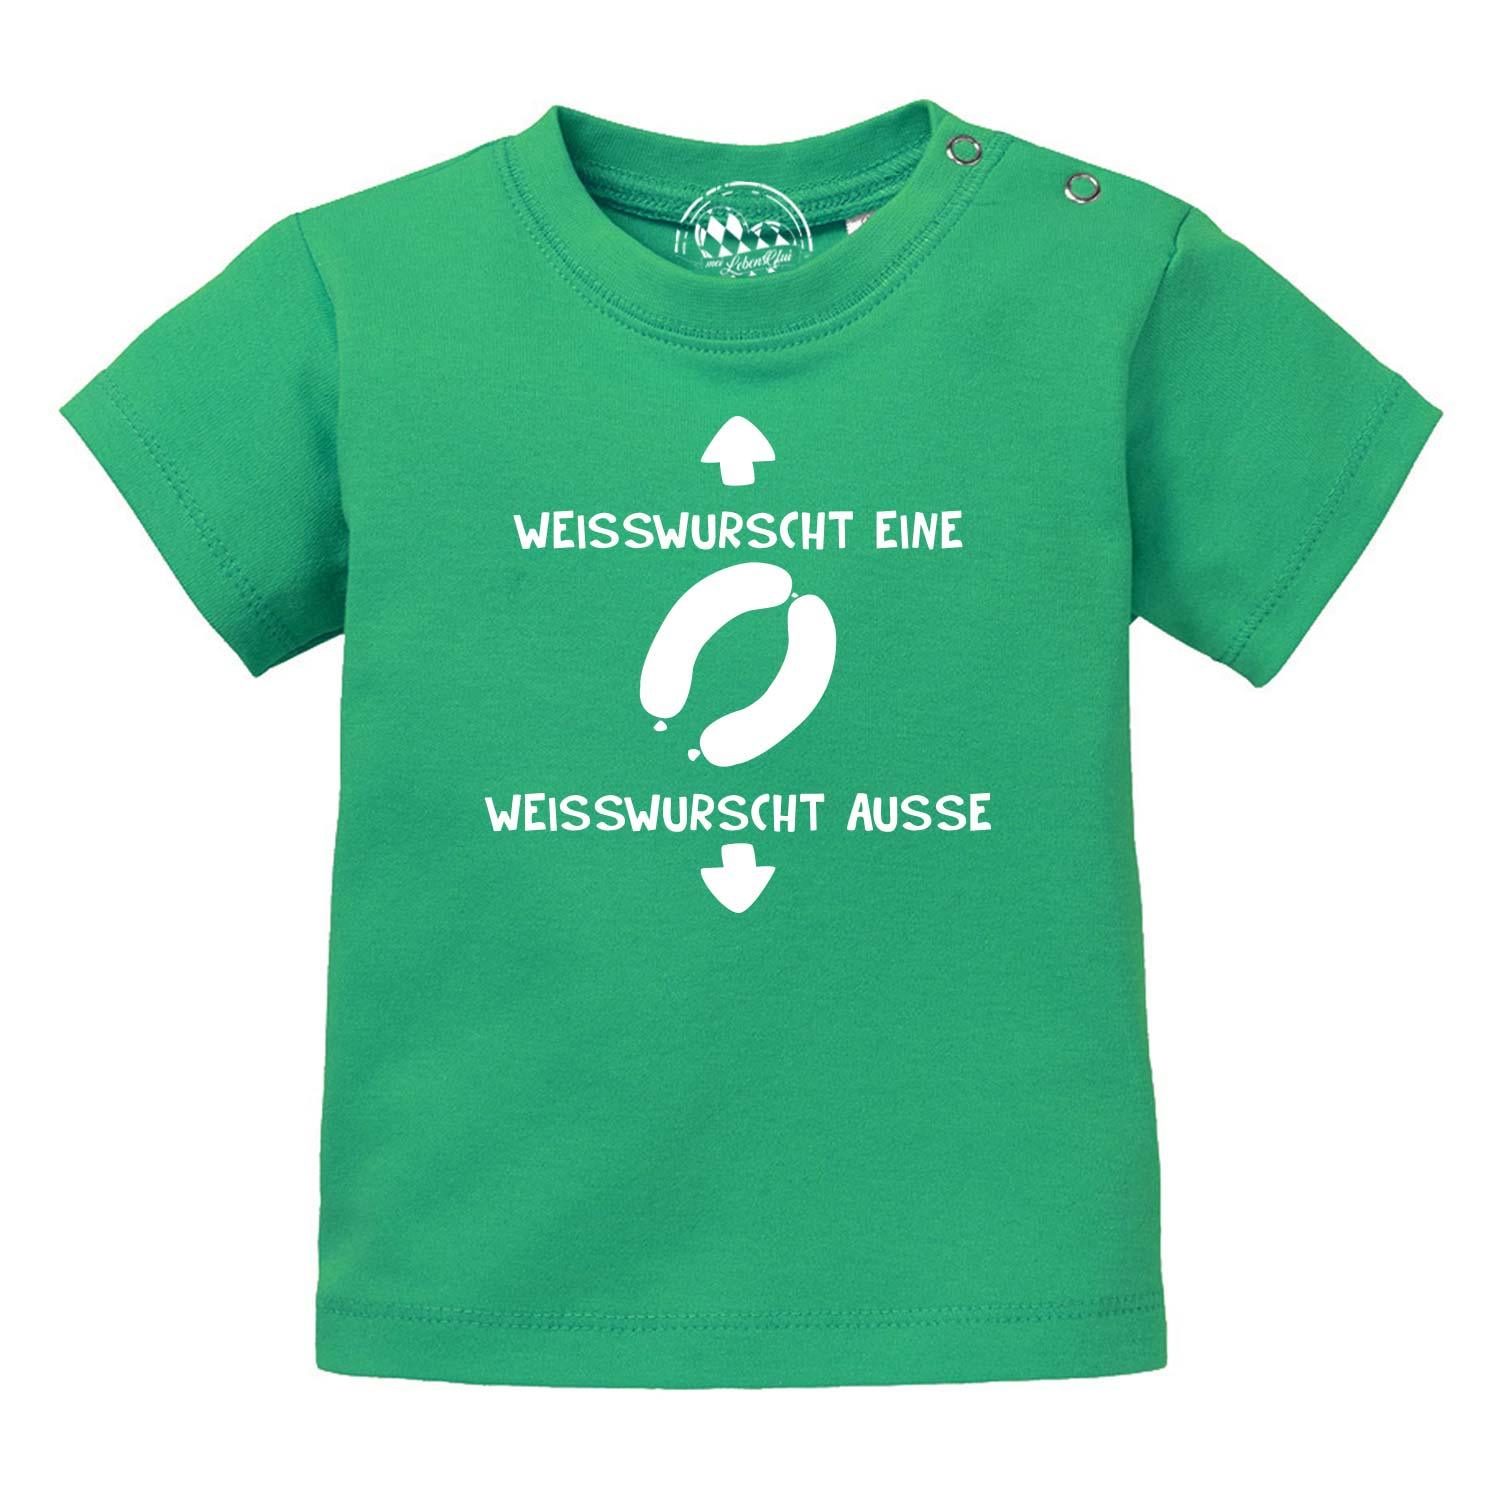 Baby T-Shirt "Weißwurscht" - bavariashop - mei LebensGfui